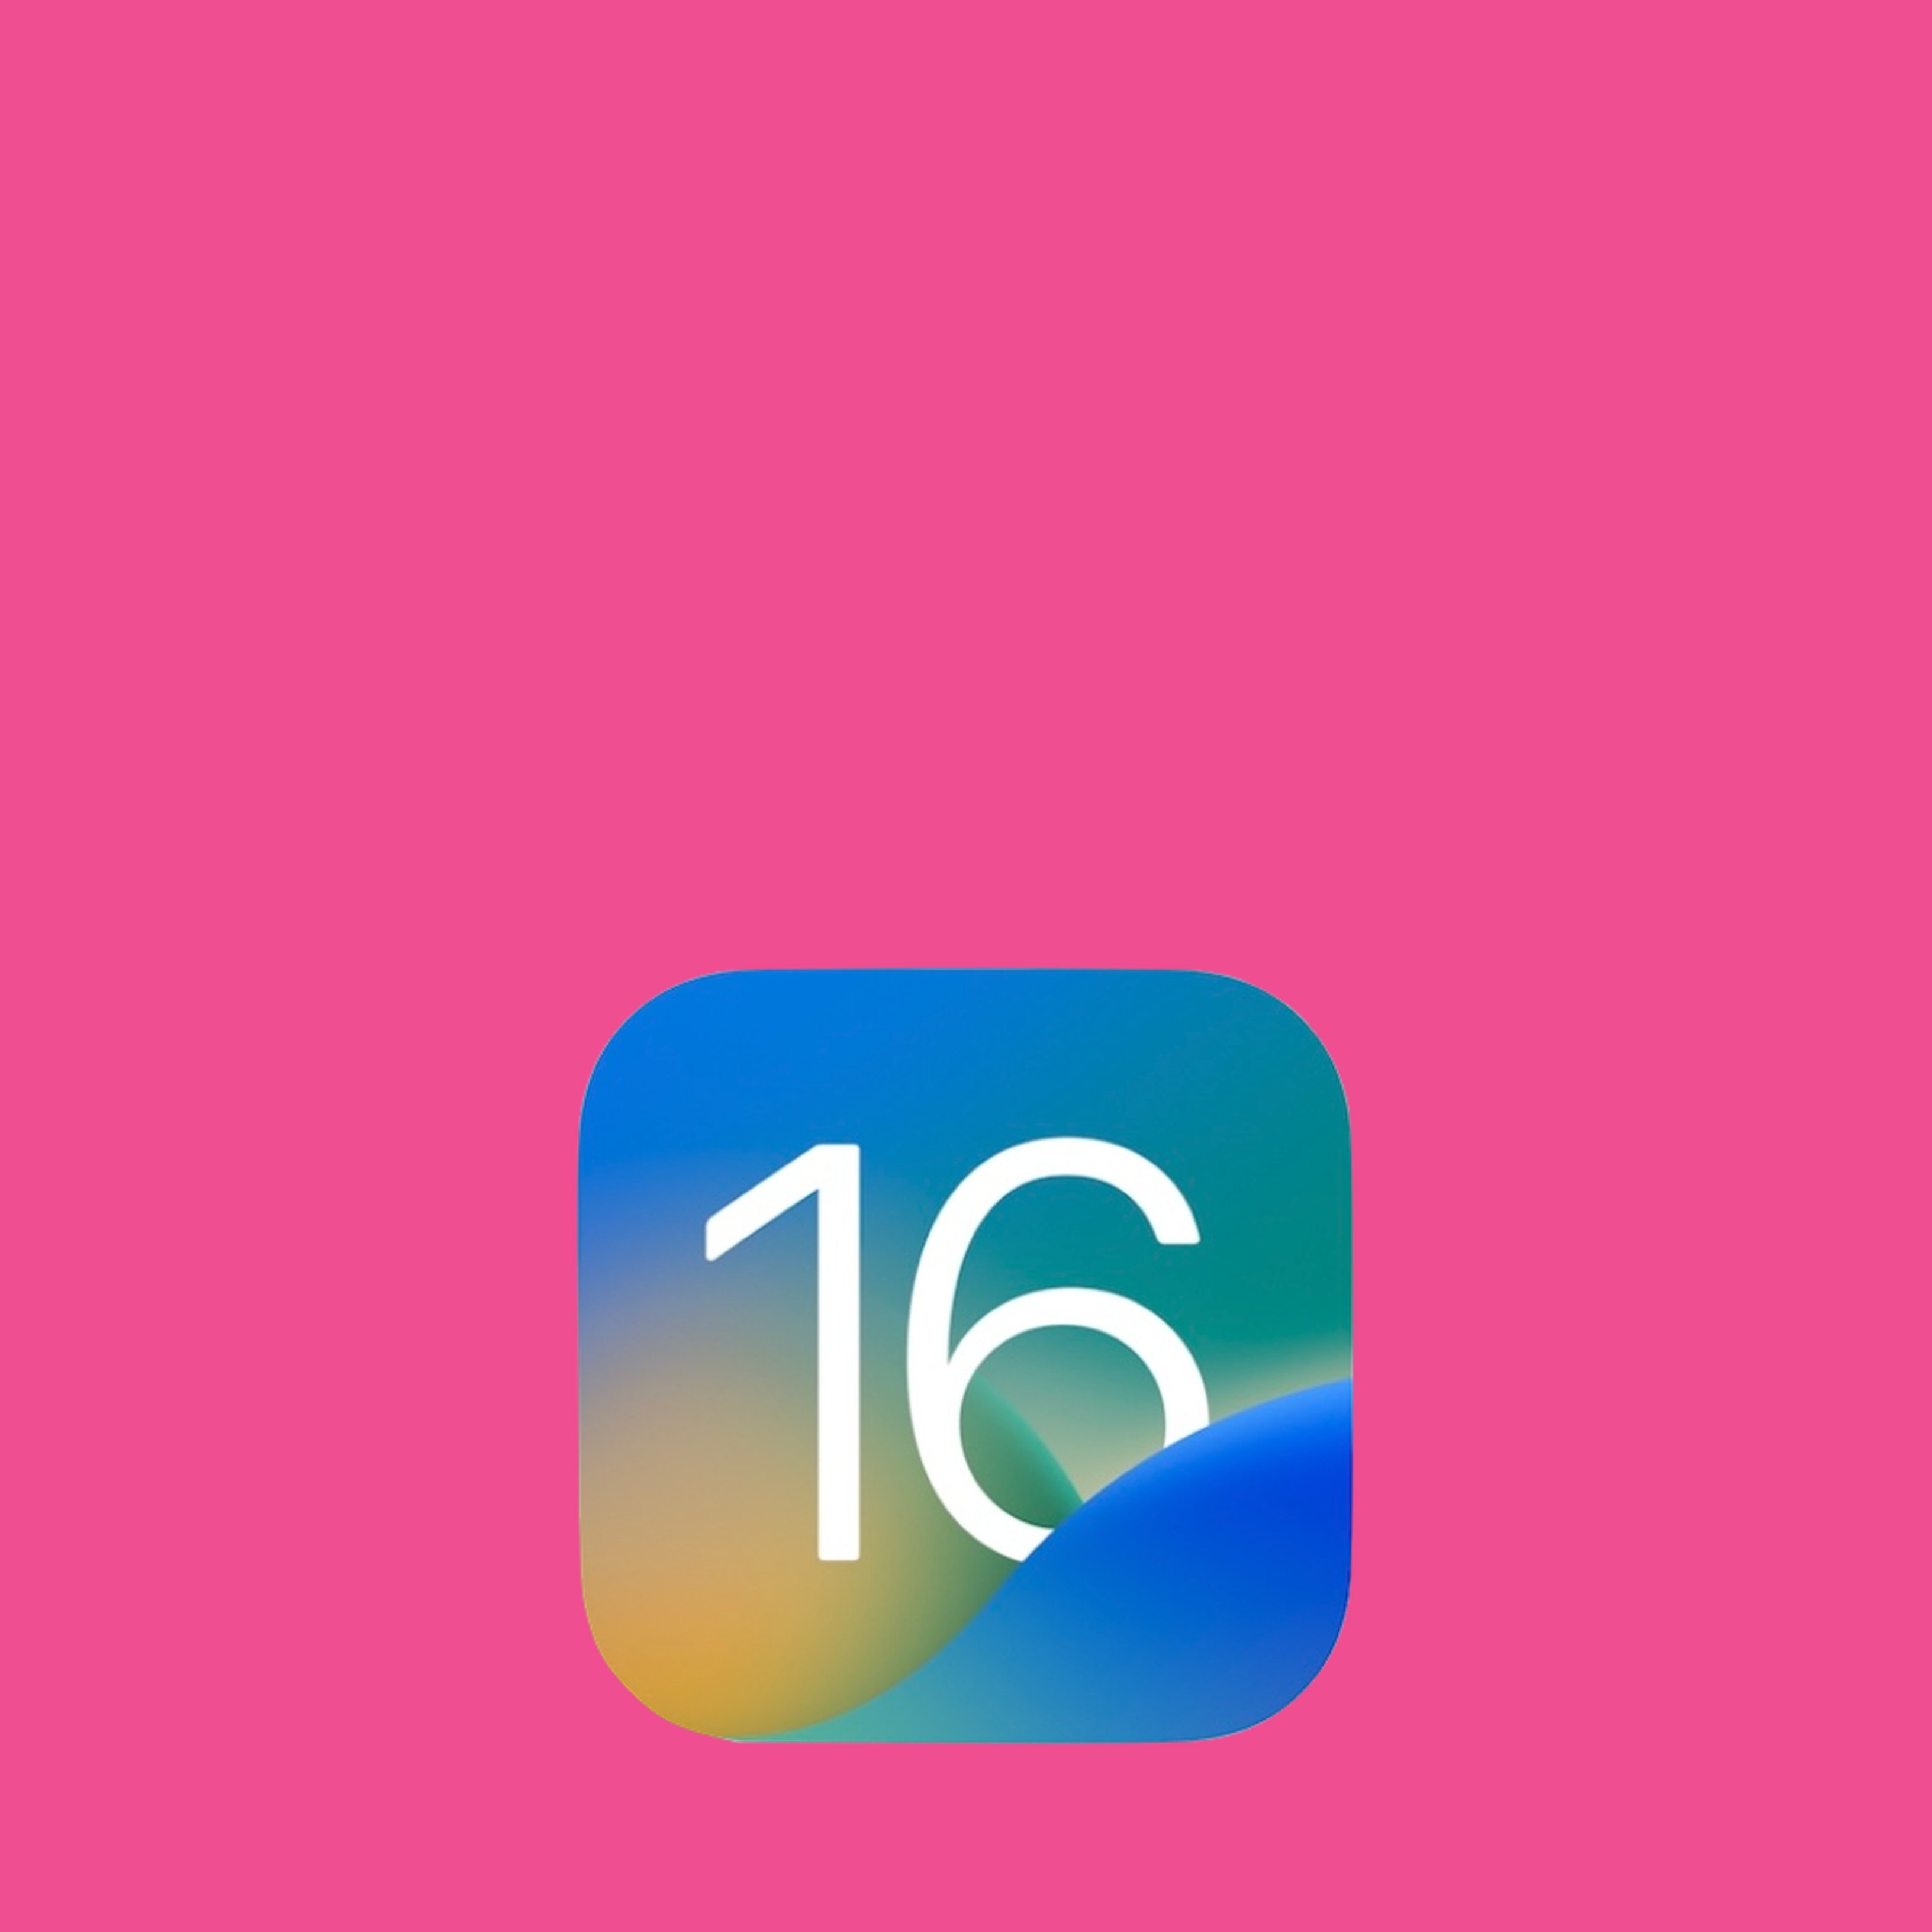 Les millors funcions de l'iOS 16 d'Apple i les que s'esperen